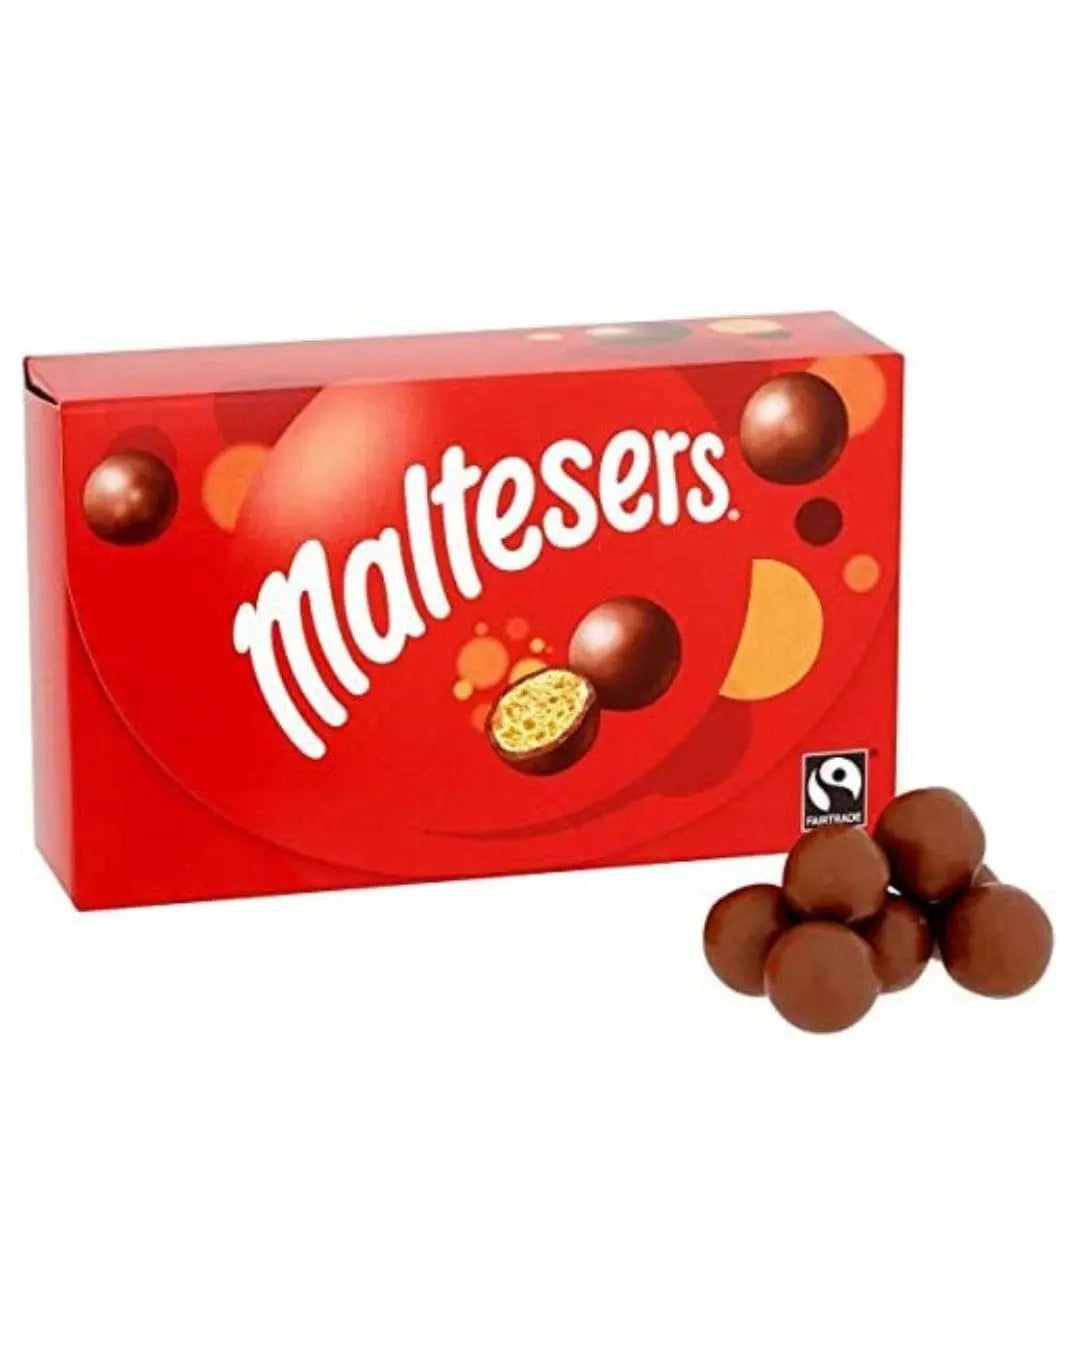 Maltesers Chocolate Gift Box, 185 g Chocolate